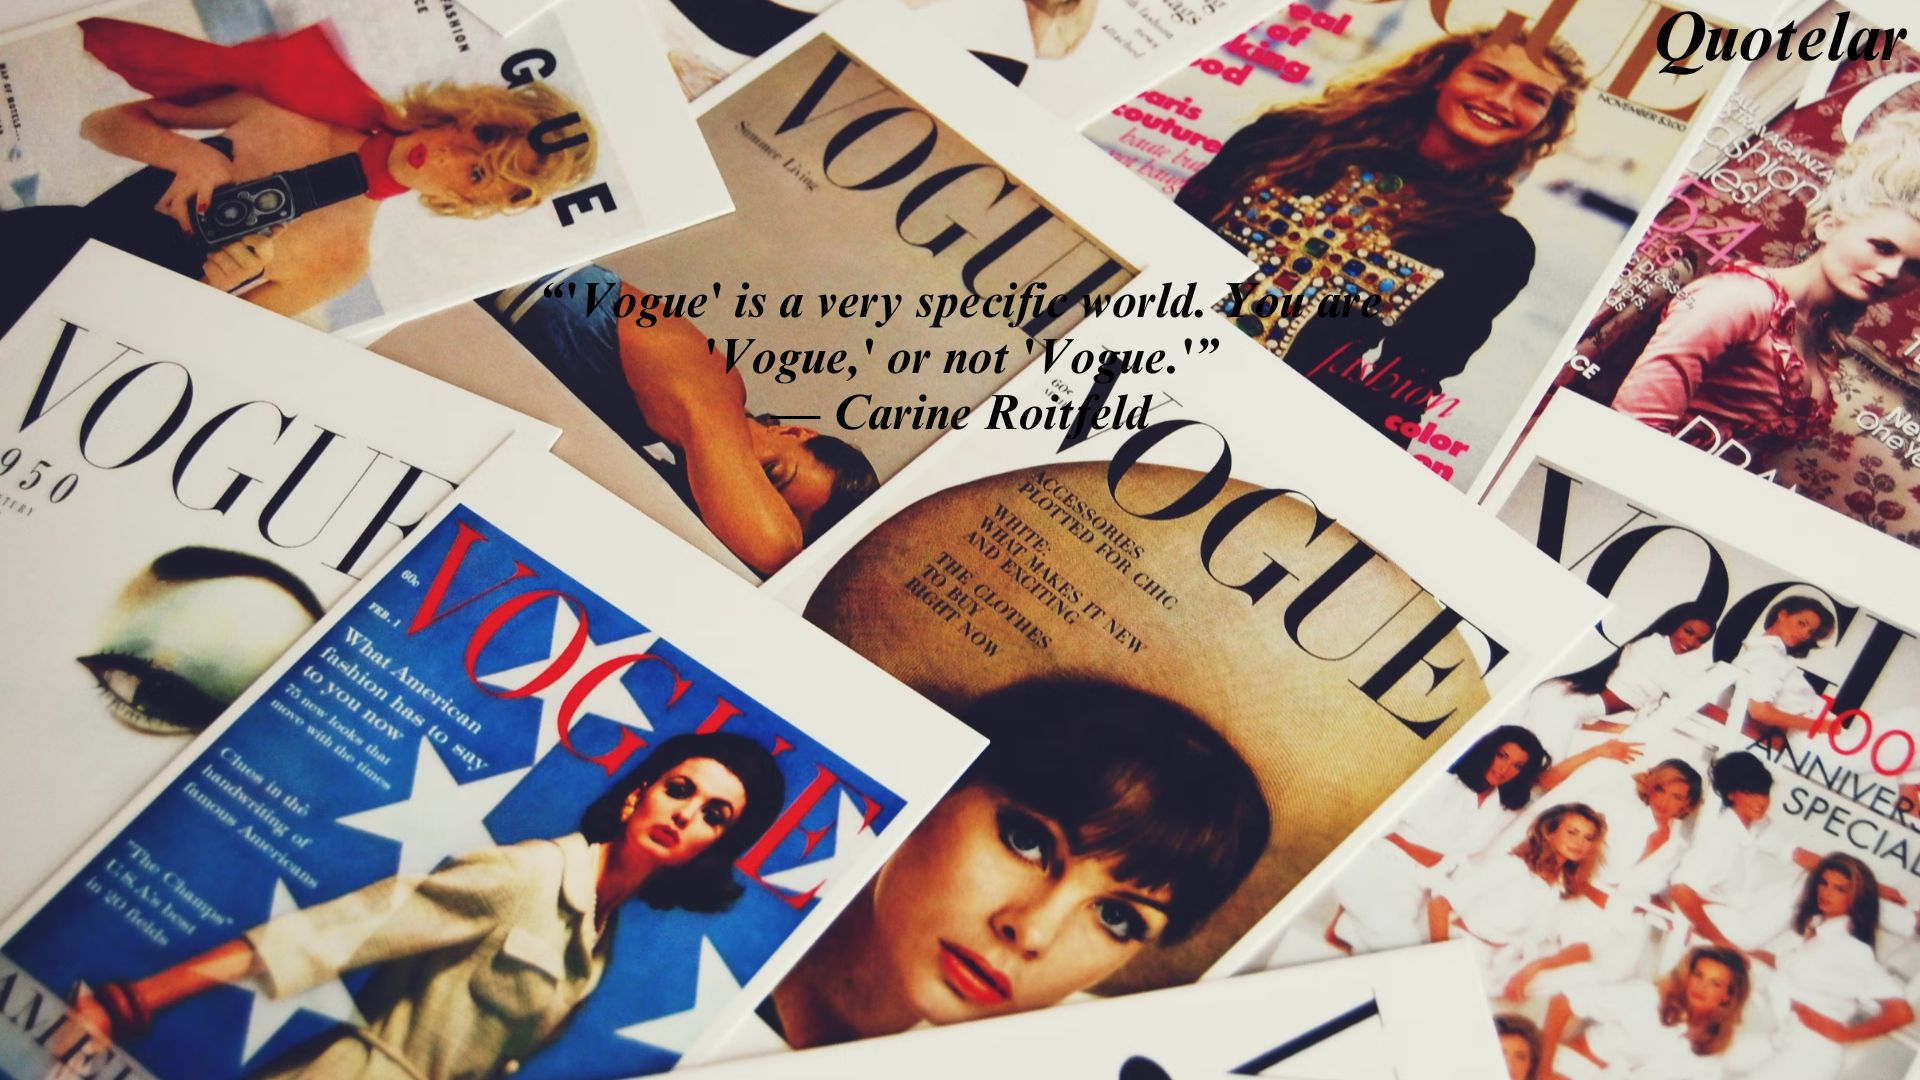 Vogue Magazine Quotes